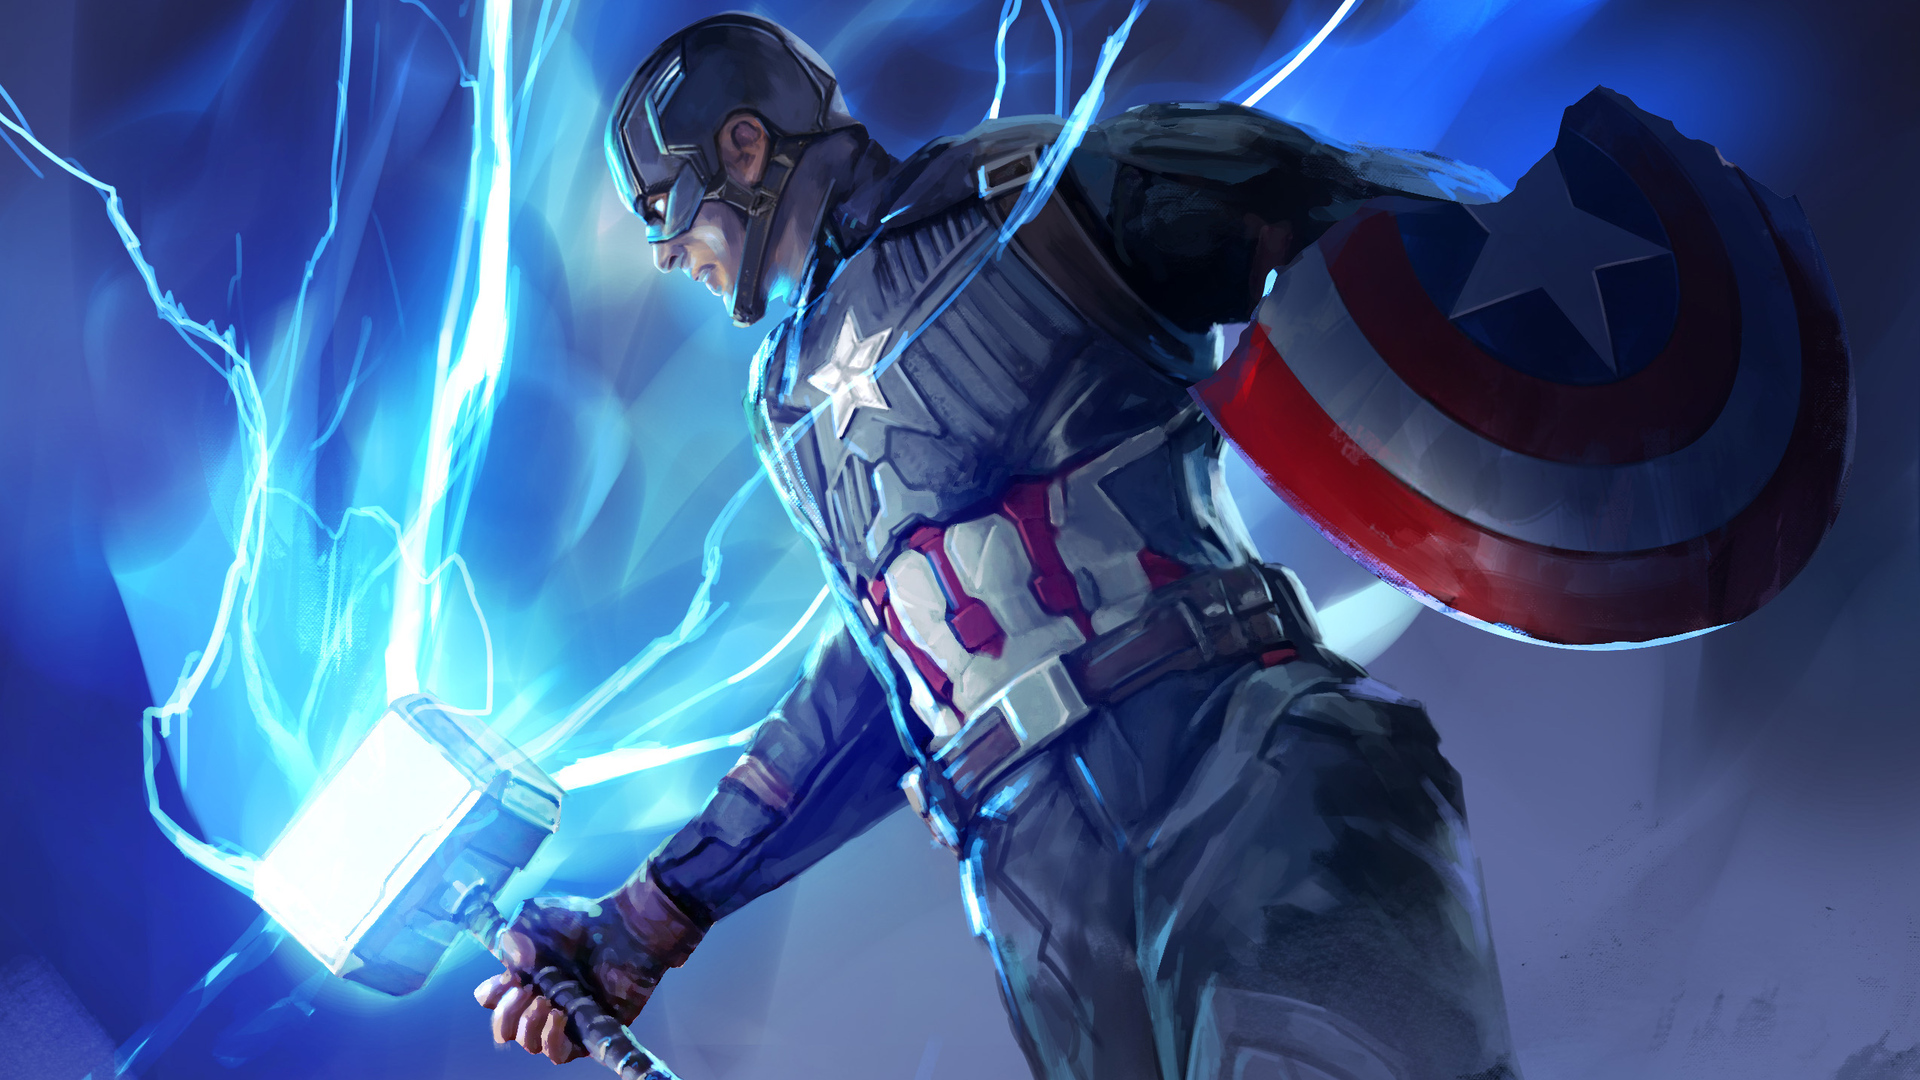 Captain America Avengers Endgame Wallpapers